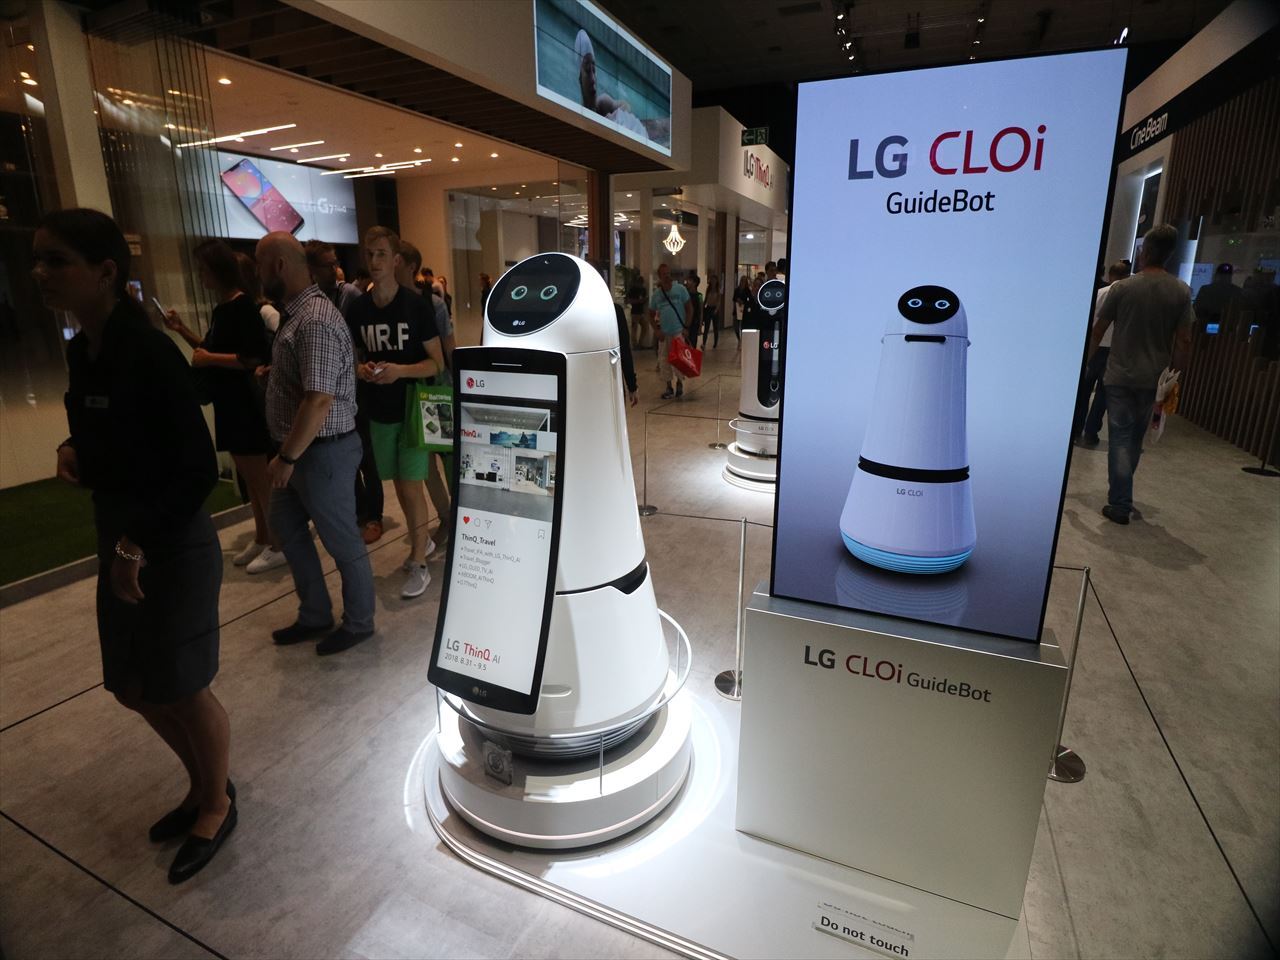 LGのガイドロボット。足回りの部分が共通で上部を用途によって入れ替えたさまざまなバリエーションが展示されていた